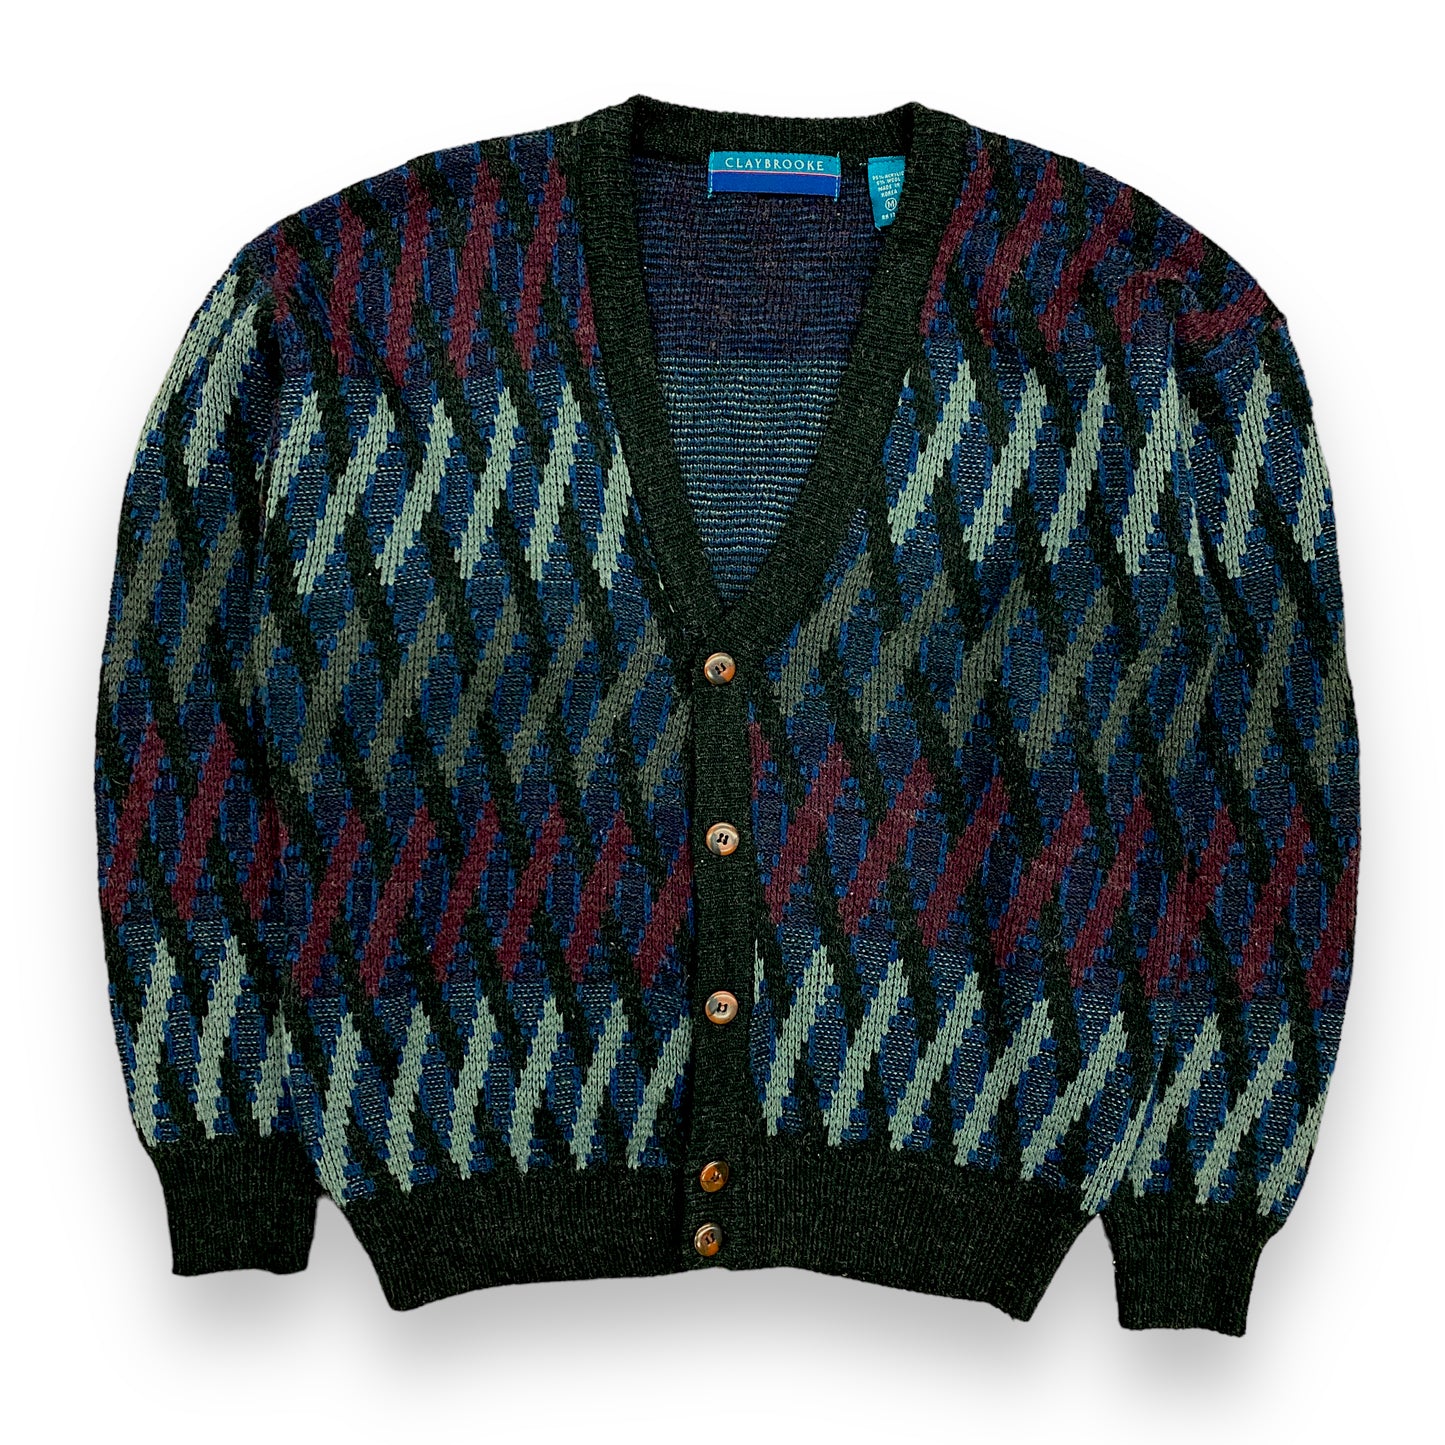 1990s Geometric Knit Wool Blend Cardigan - Size Medium